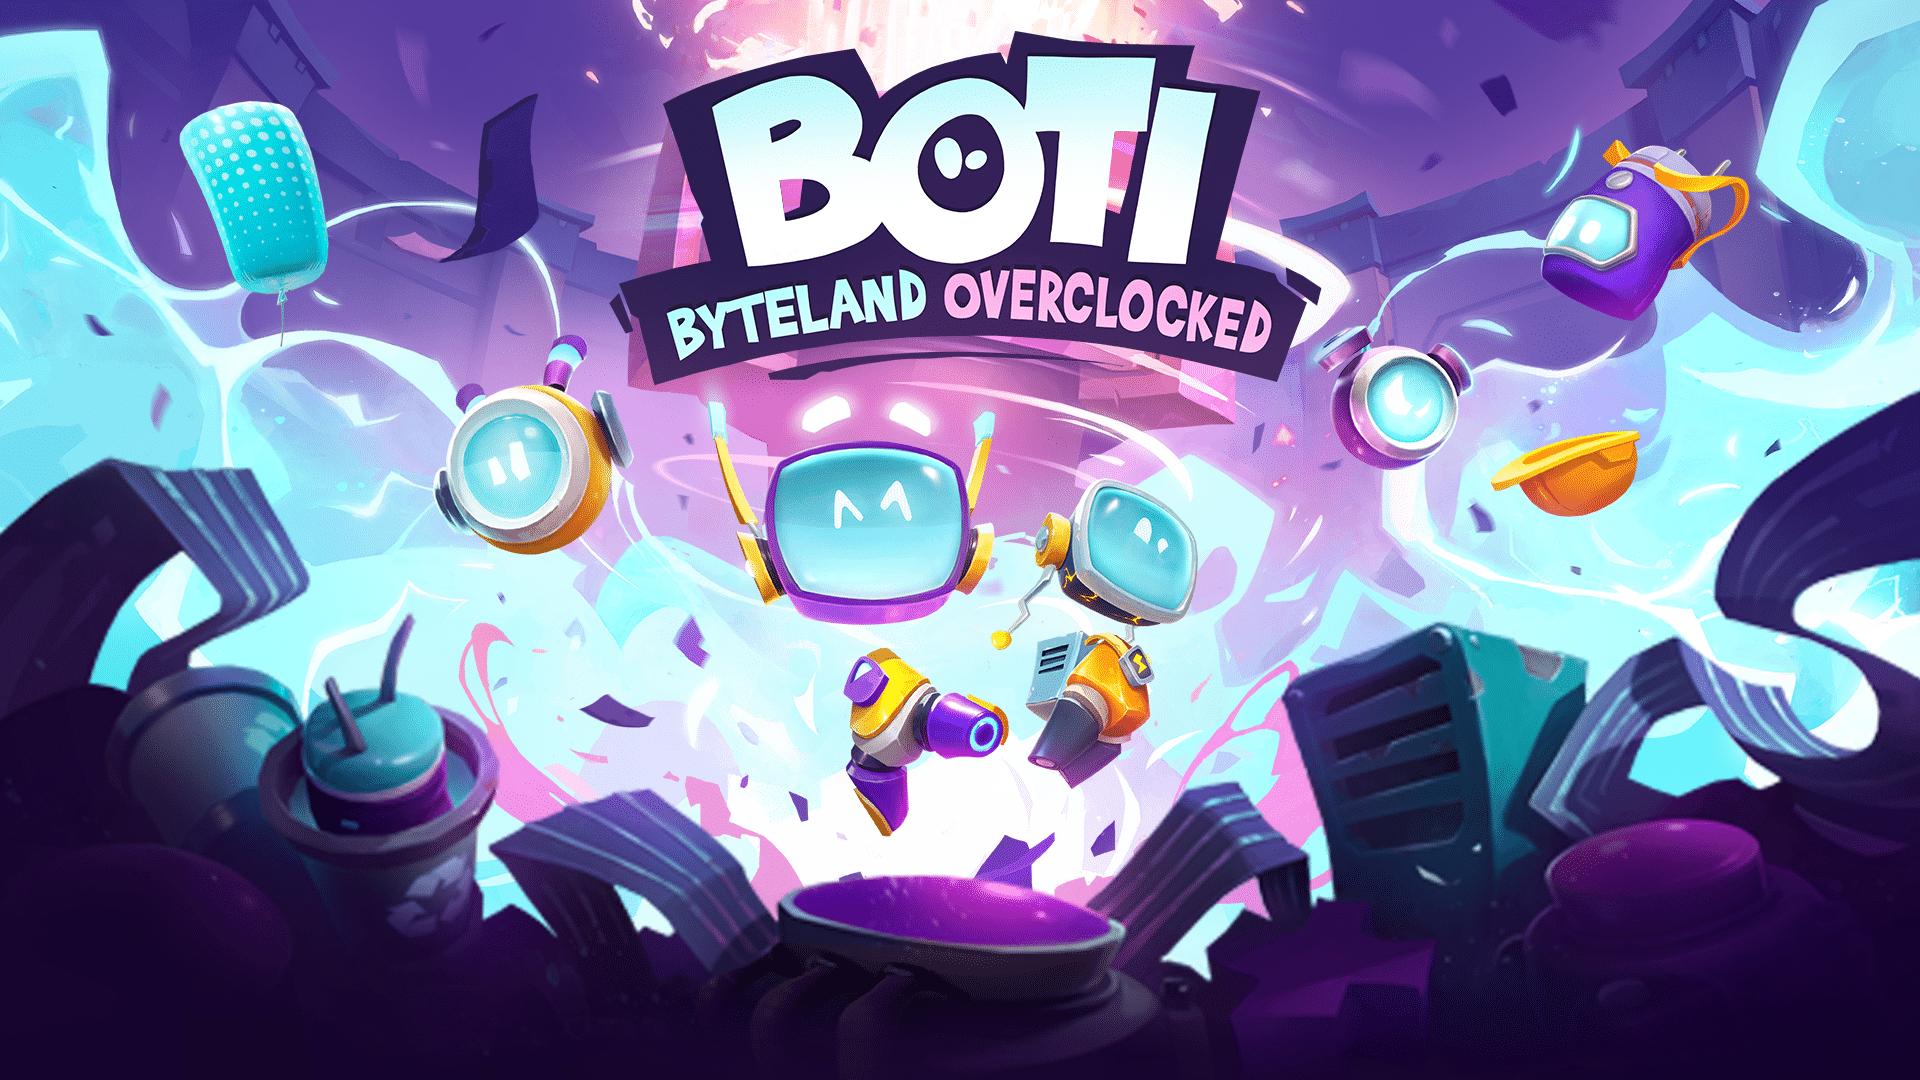 Boti : Byteland Overclocked